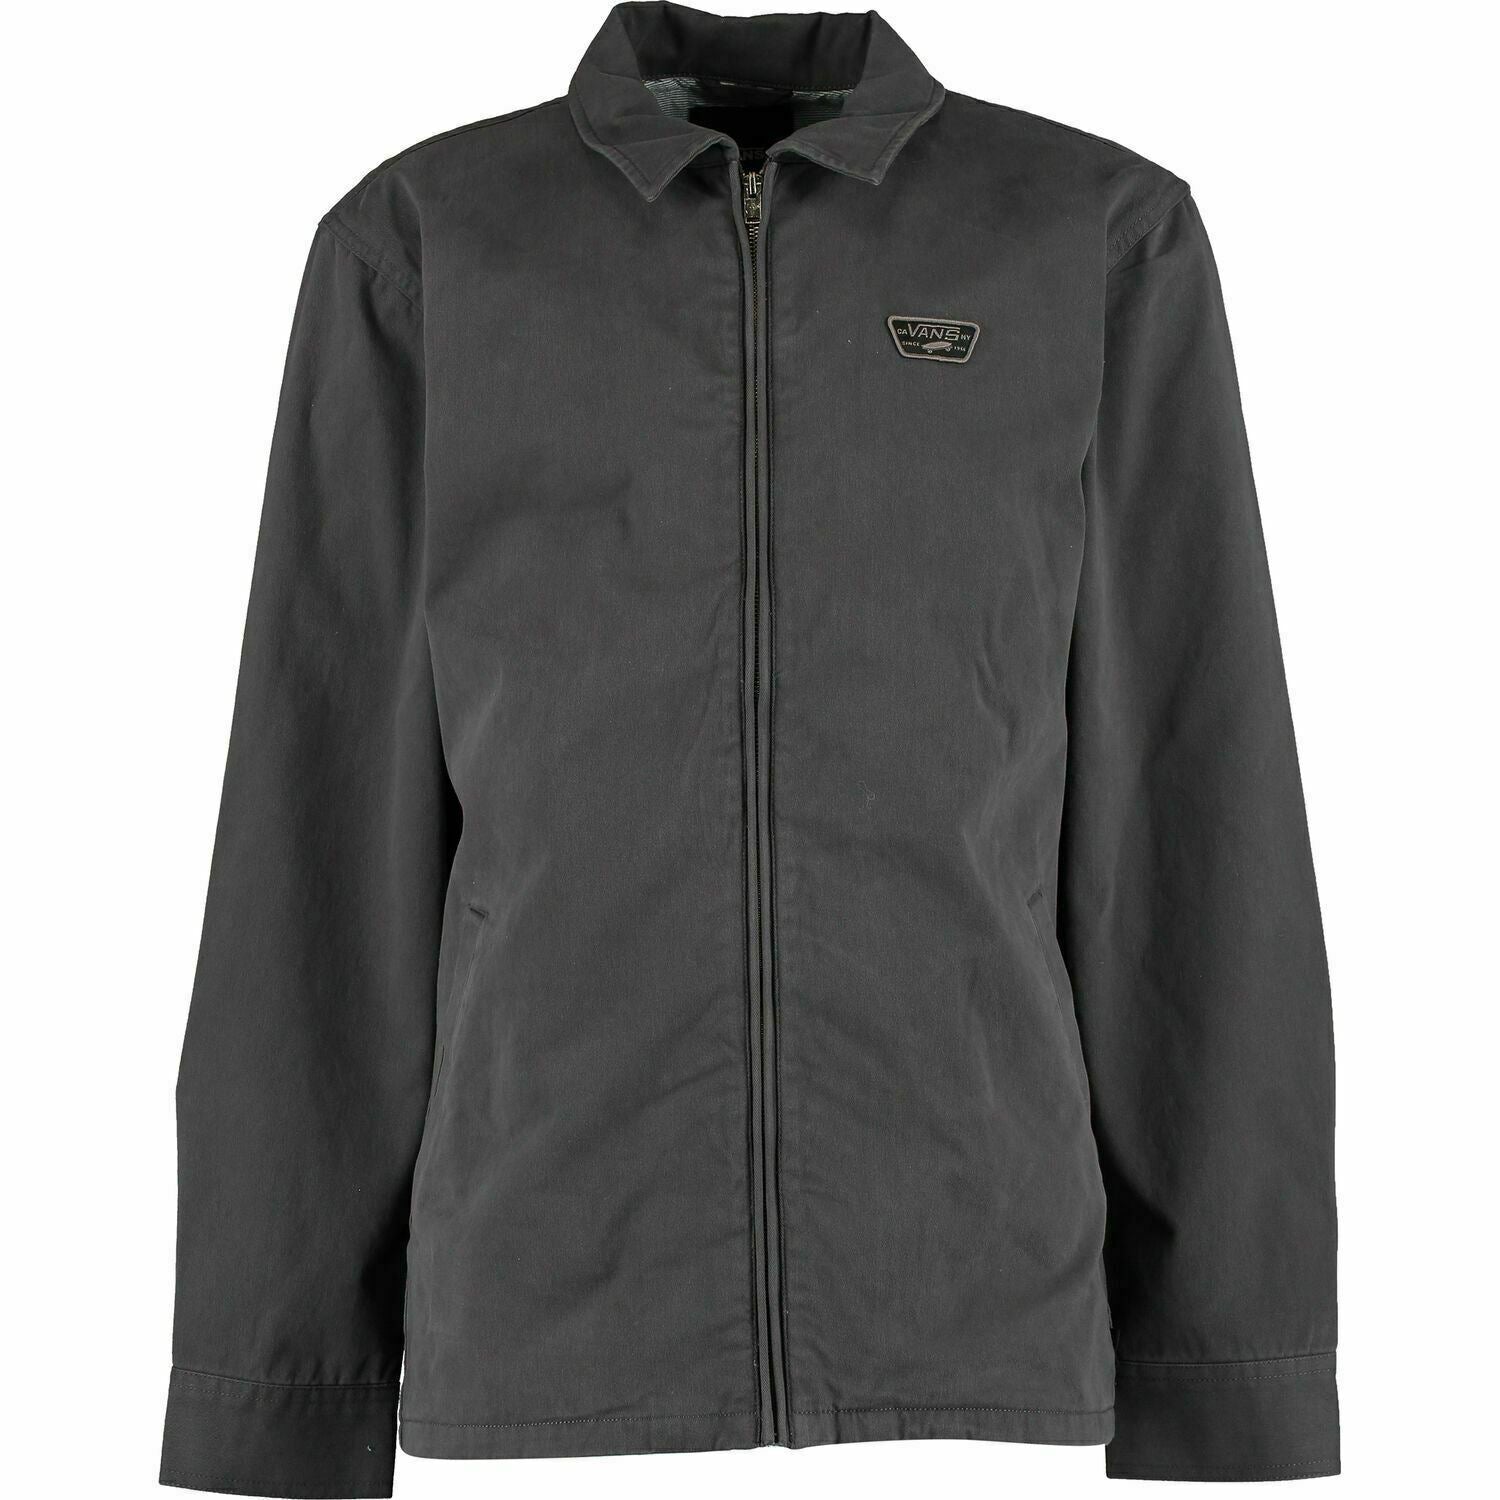 VANS Men's BELFAIR II Jacket, Cotton Brushed Twill, Asphalt Grey, size XS